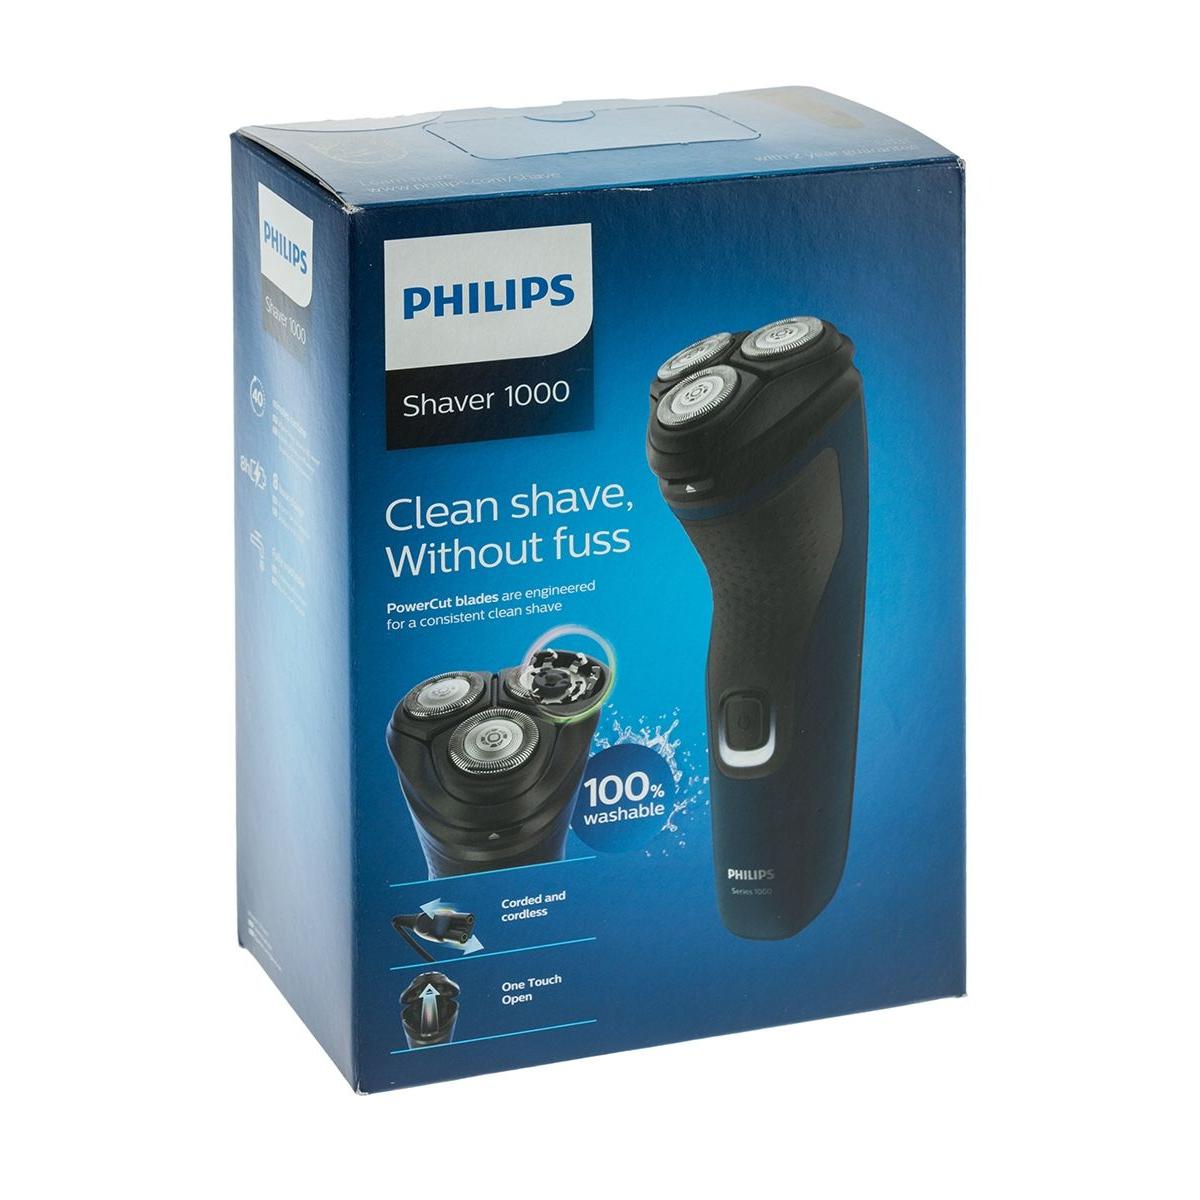 Филипс вращающаяся. Philips s1131/41. Электробритва Philips s1131/41 черный. Бритва роторная Philips s1520/04 черный/серый. Электробритва Homestar HS-9012 отзывы.